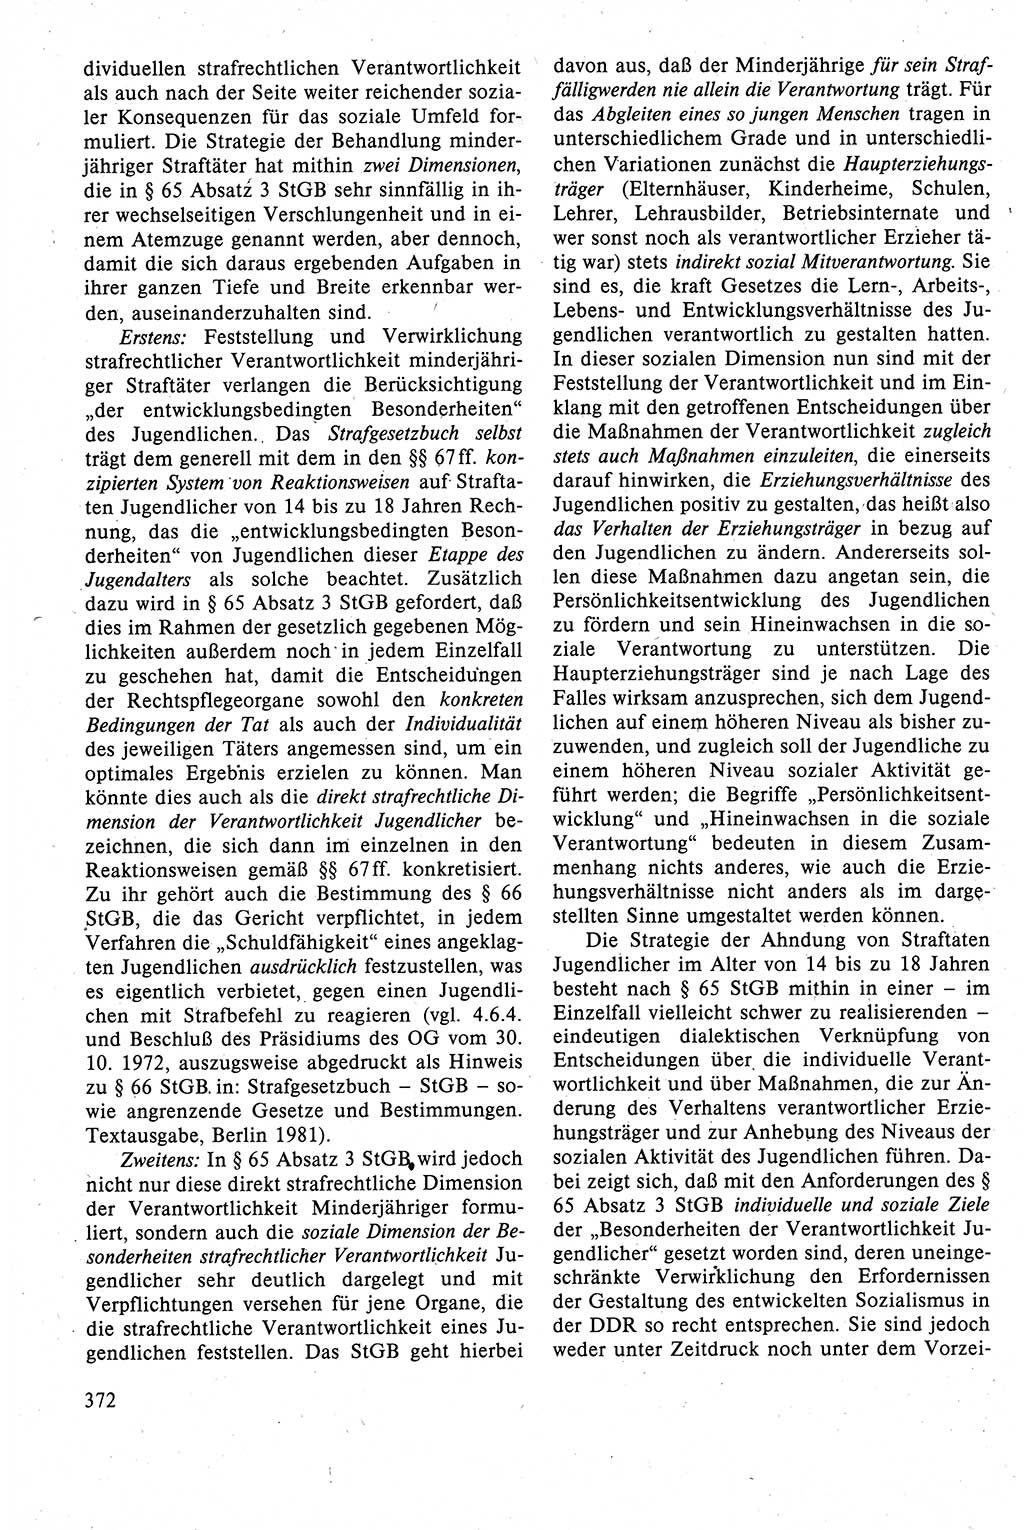 Strafrecht der DDR (Deutsche Demokratische Republik), Lehrbuch 1988, Seite 372 (Strafr. DDR Lb. 1988, S. 372)